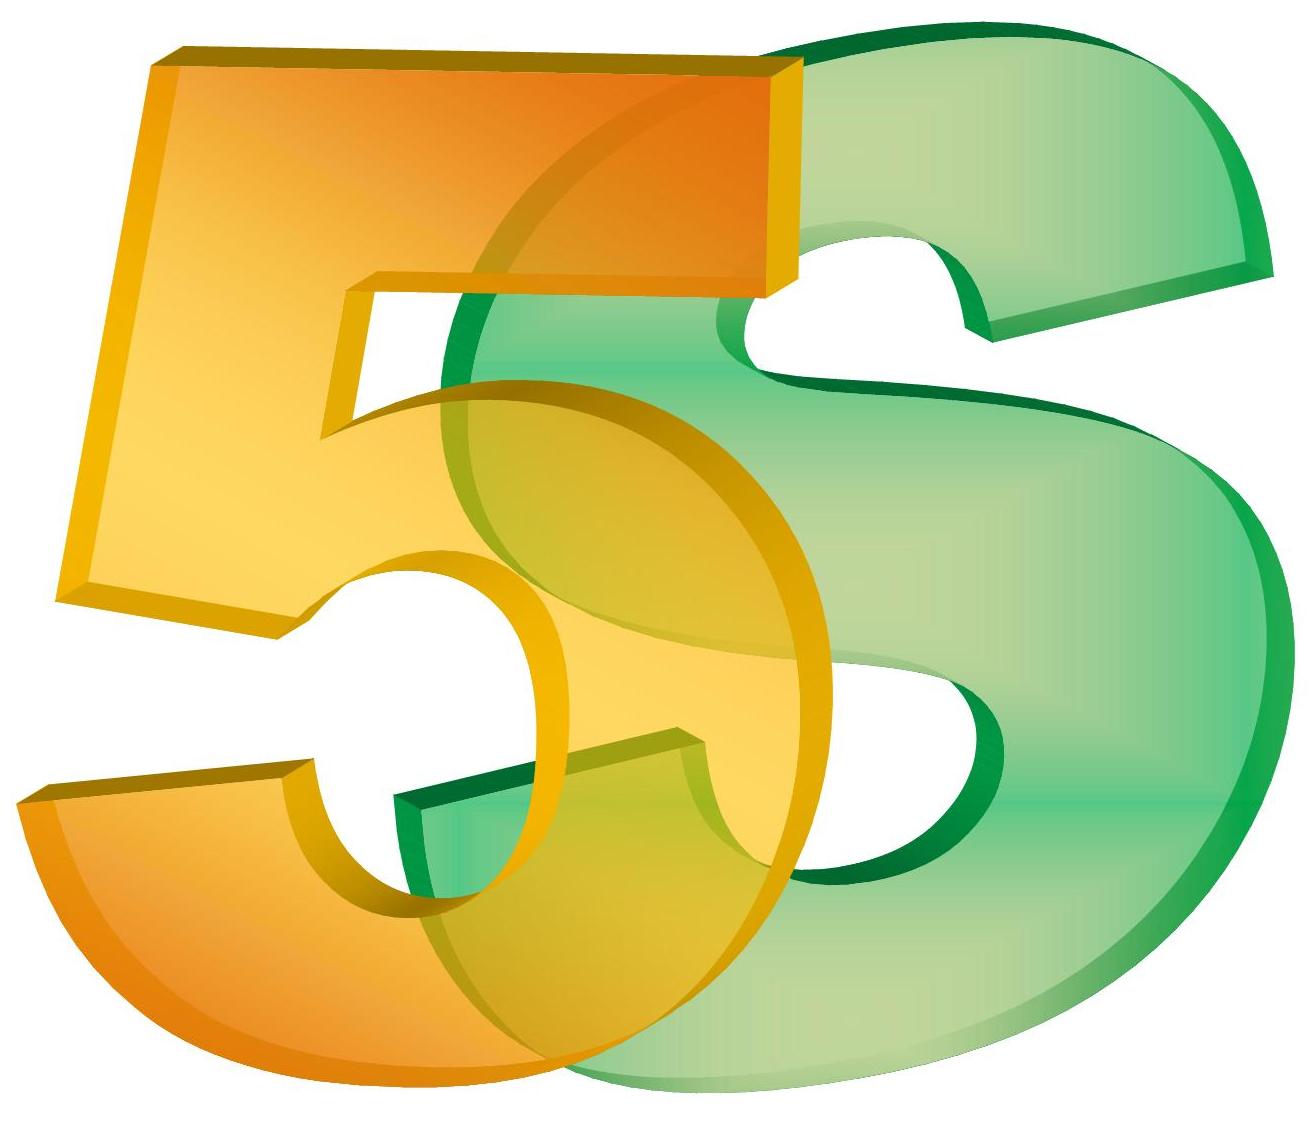 Система пятерок. Картинка 5. Эмблема 5s. 5s логотип. 5s (система).